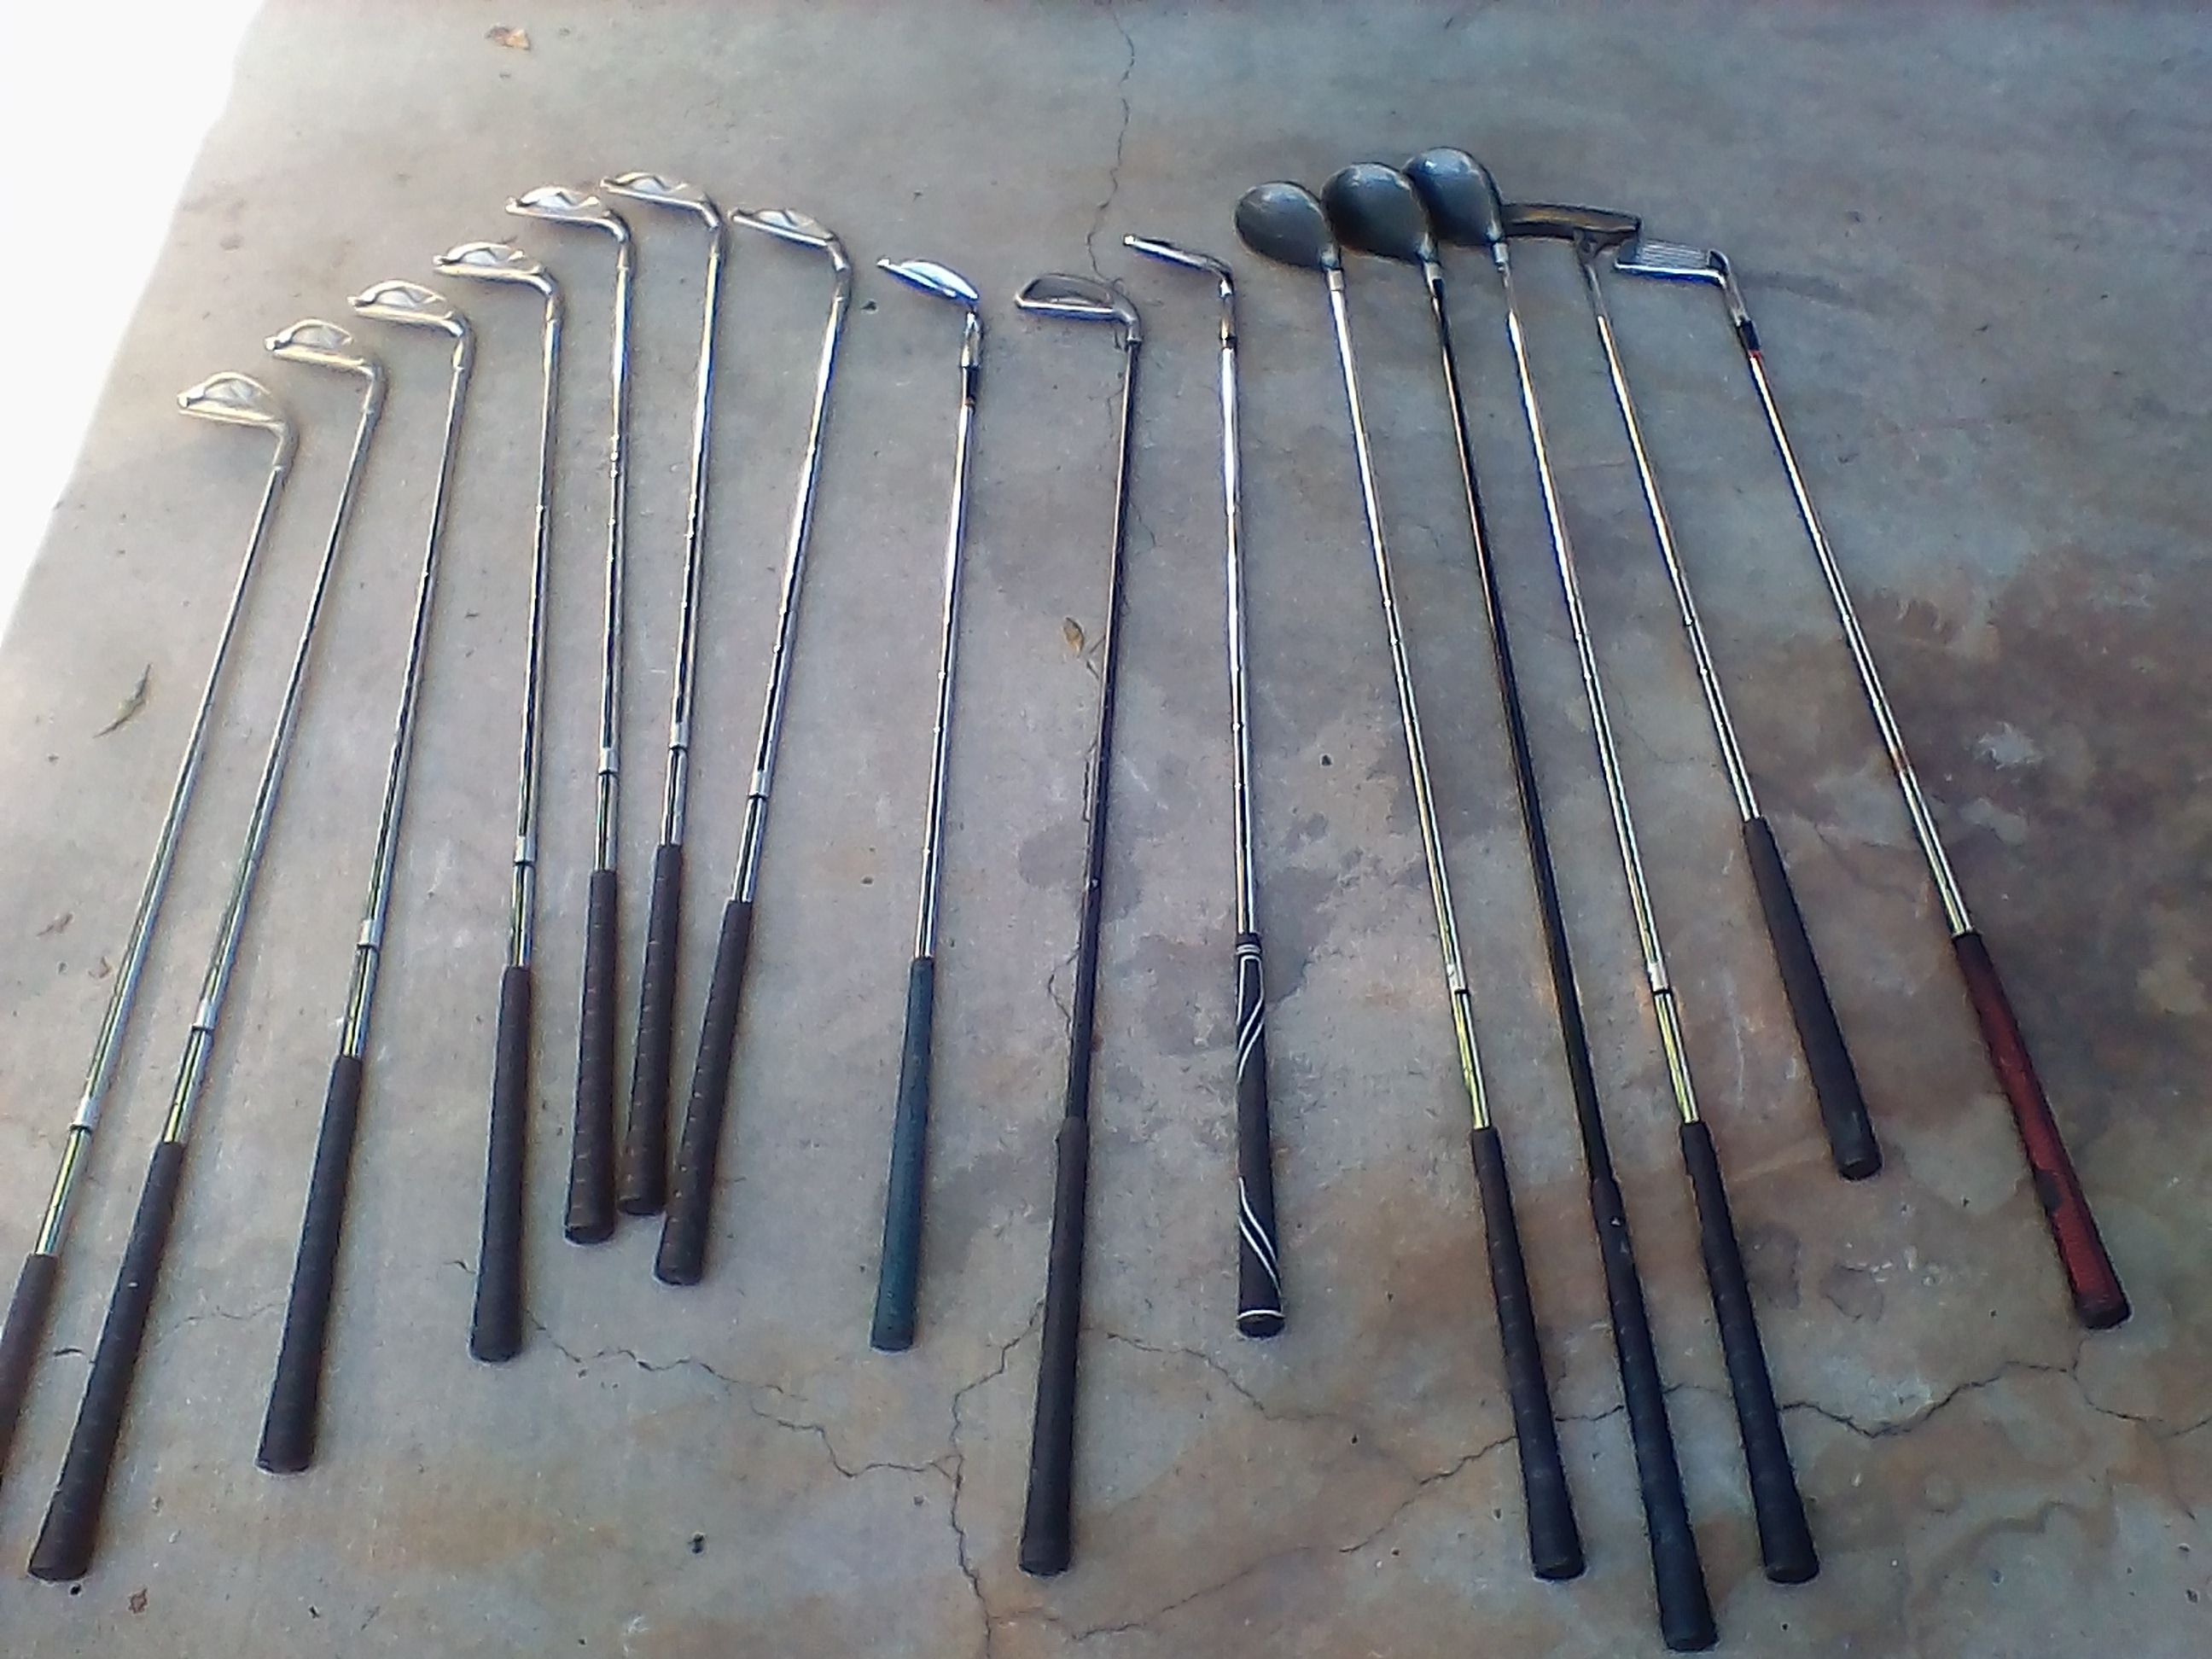 15 golf clubs